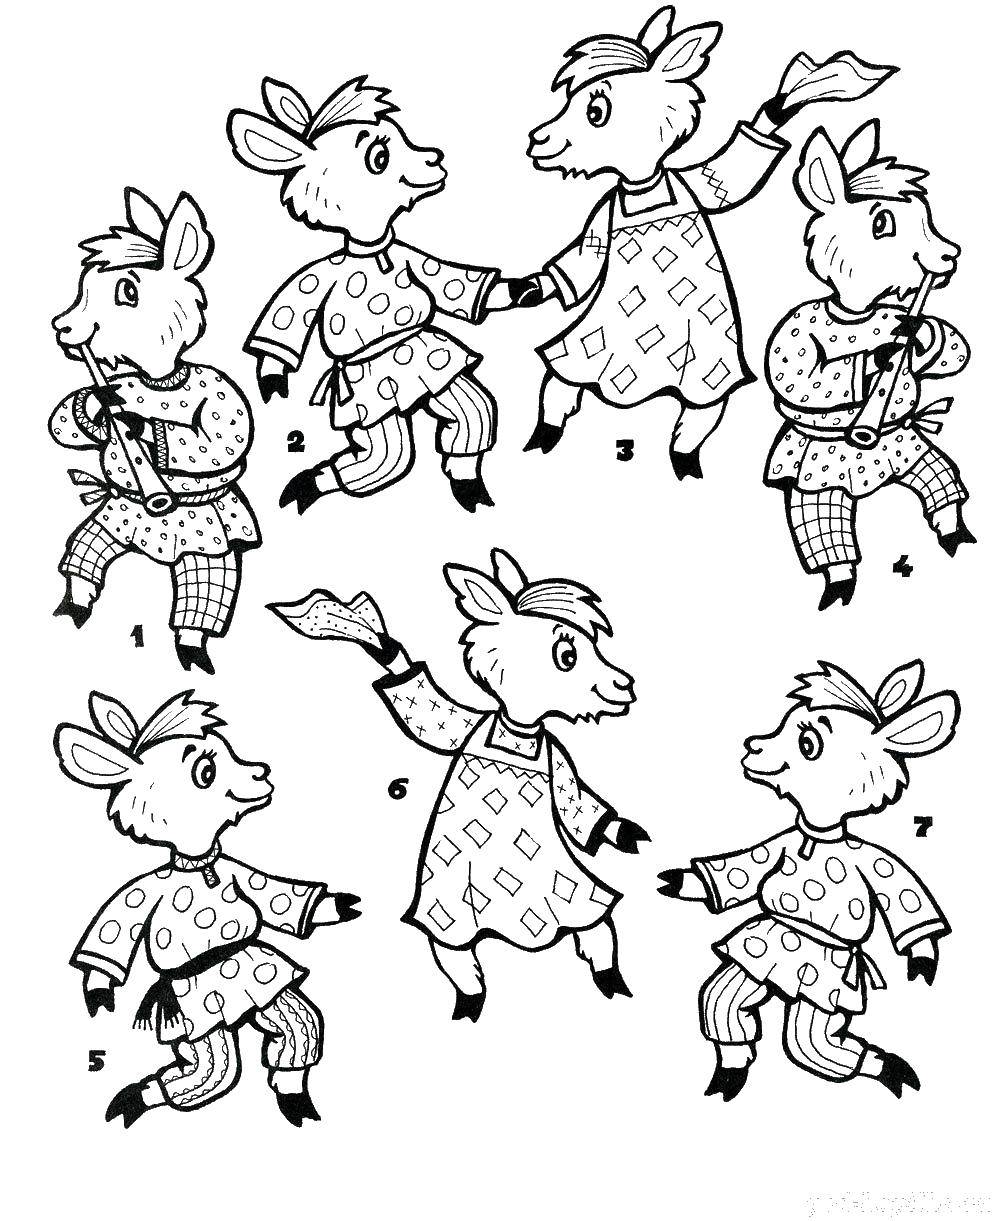 Опис: розмальовки  Семеро козенят. Категорія: сестриця оленка та братик іванко. Теги:  Семеро козенят.